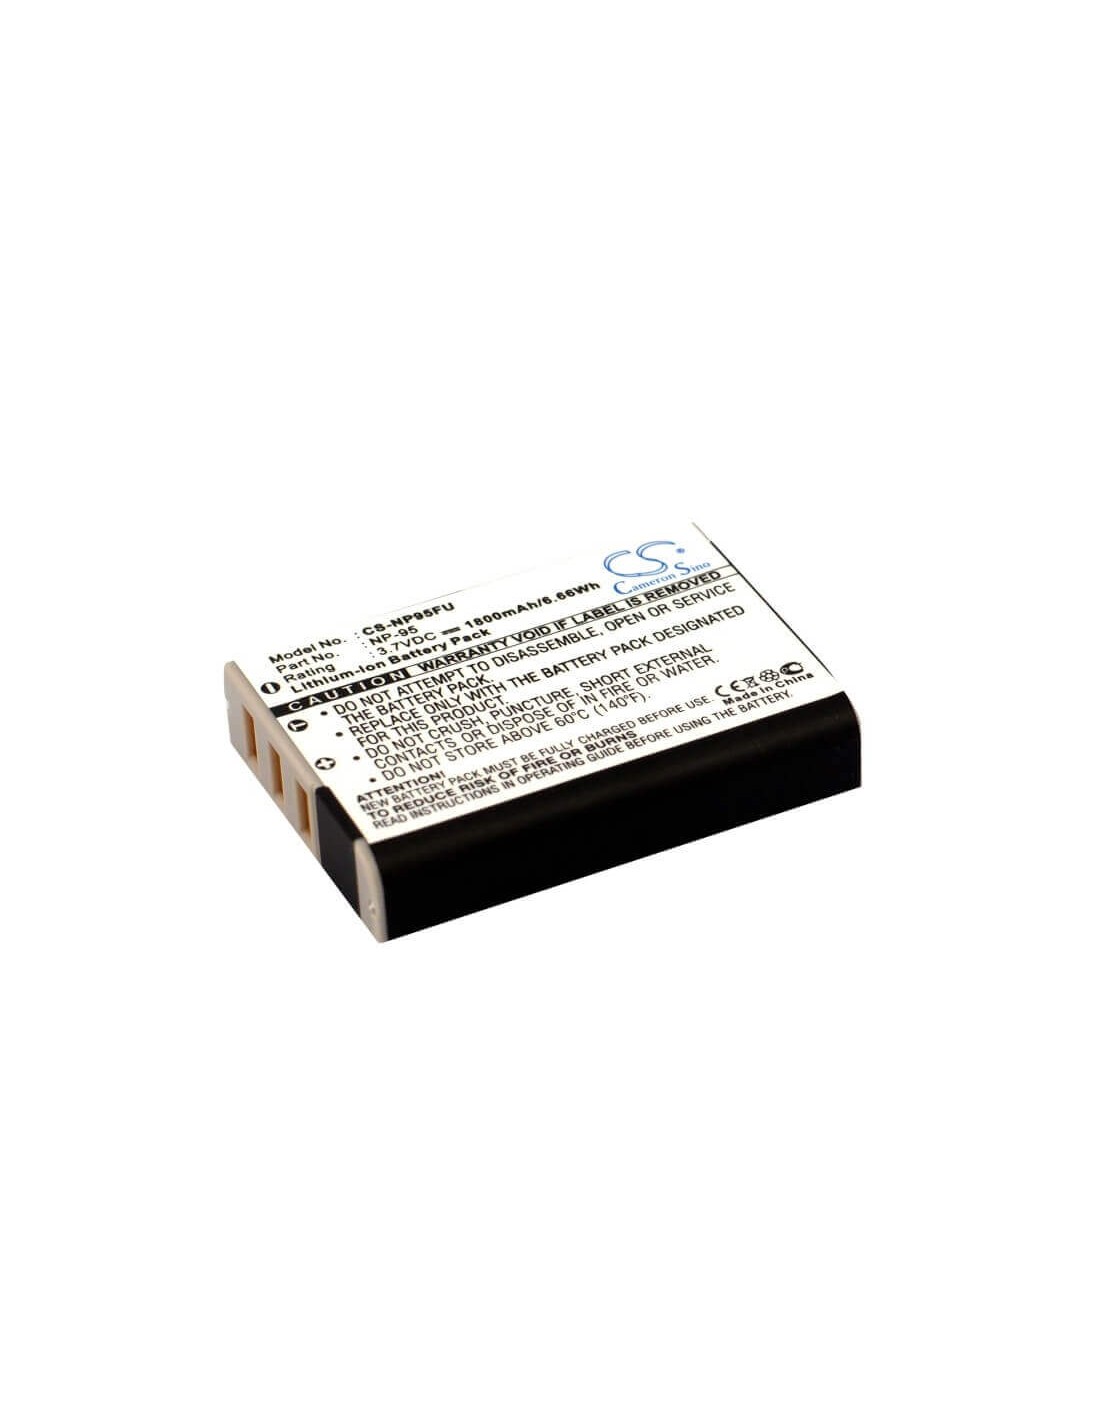 Battery for Ricoh Gxr, Gxr-a12, Gxr-s10 3.7V, 1800mAh - 6.66Wh